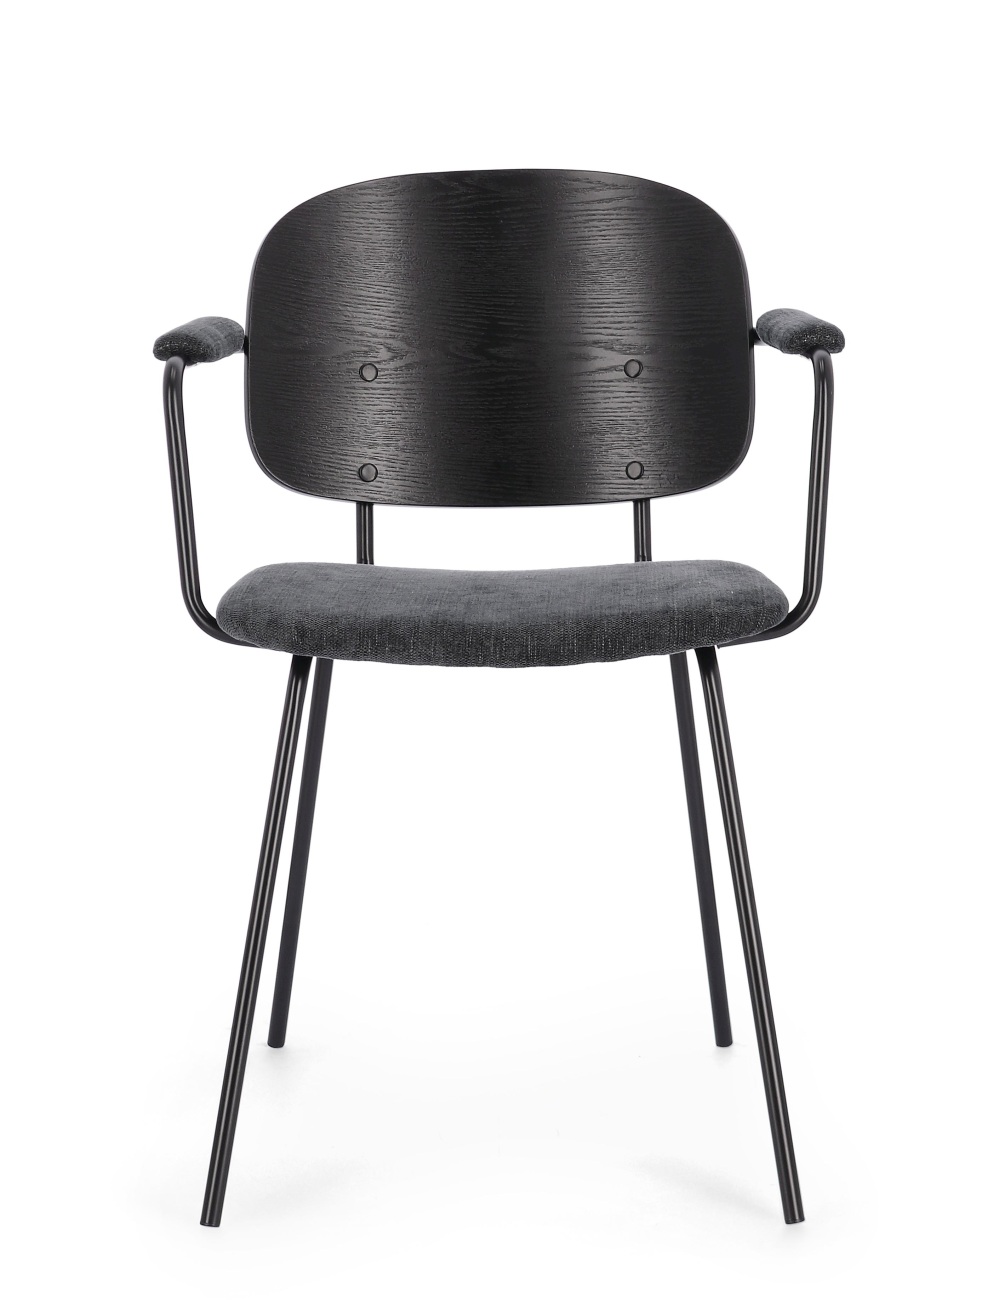 Der Esszimmerstuhl Sienna überzeugt mit seinem modernen Stil. Gefertigt wurde er aus Stoff, welcher einen dunkelgrauen Farbton besitzt. Das Gestell ist aus Metall und hat eine schwarze Farbe. Der Stuhl besitzt eine Sitzhöhe von 48 cm.